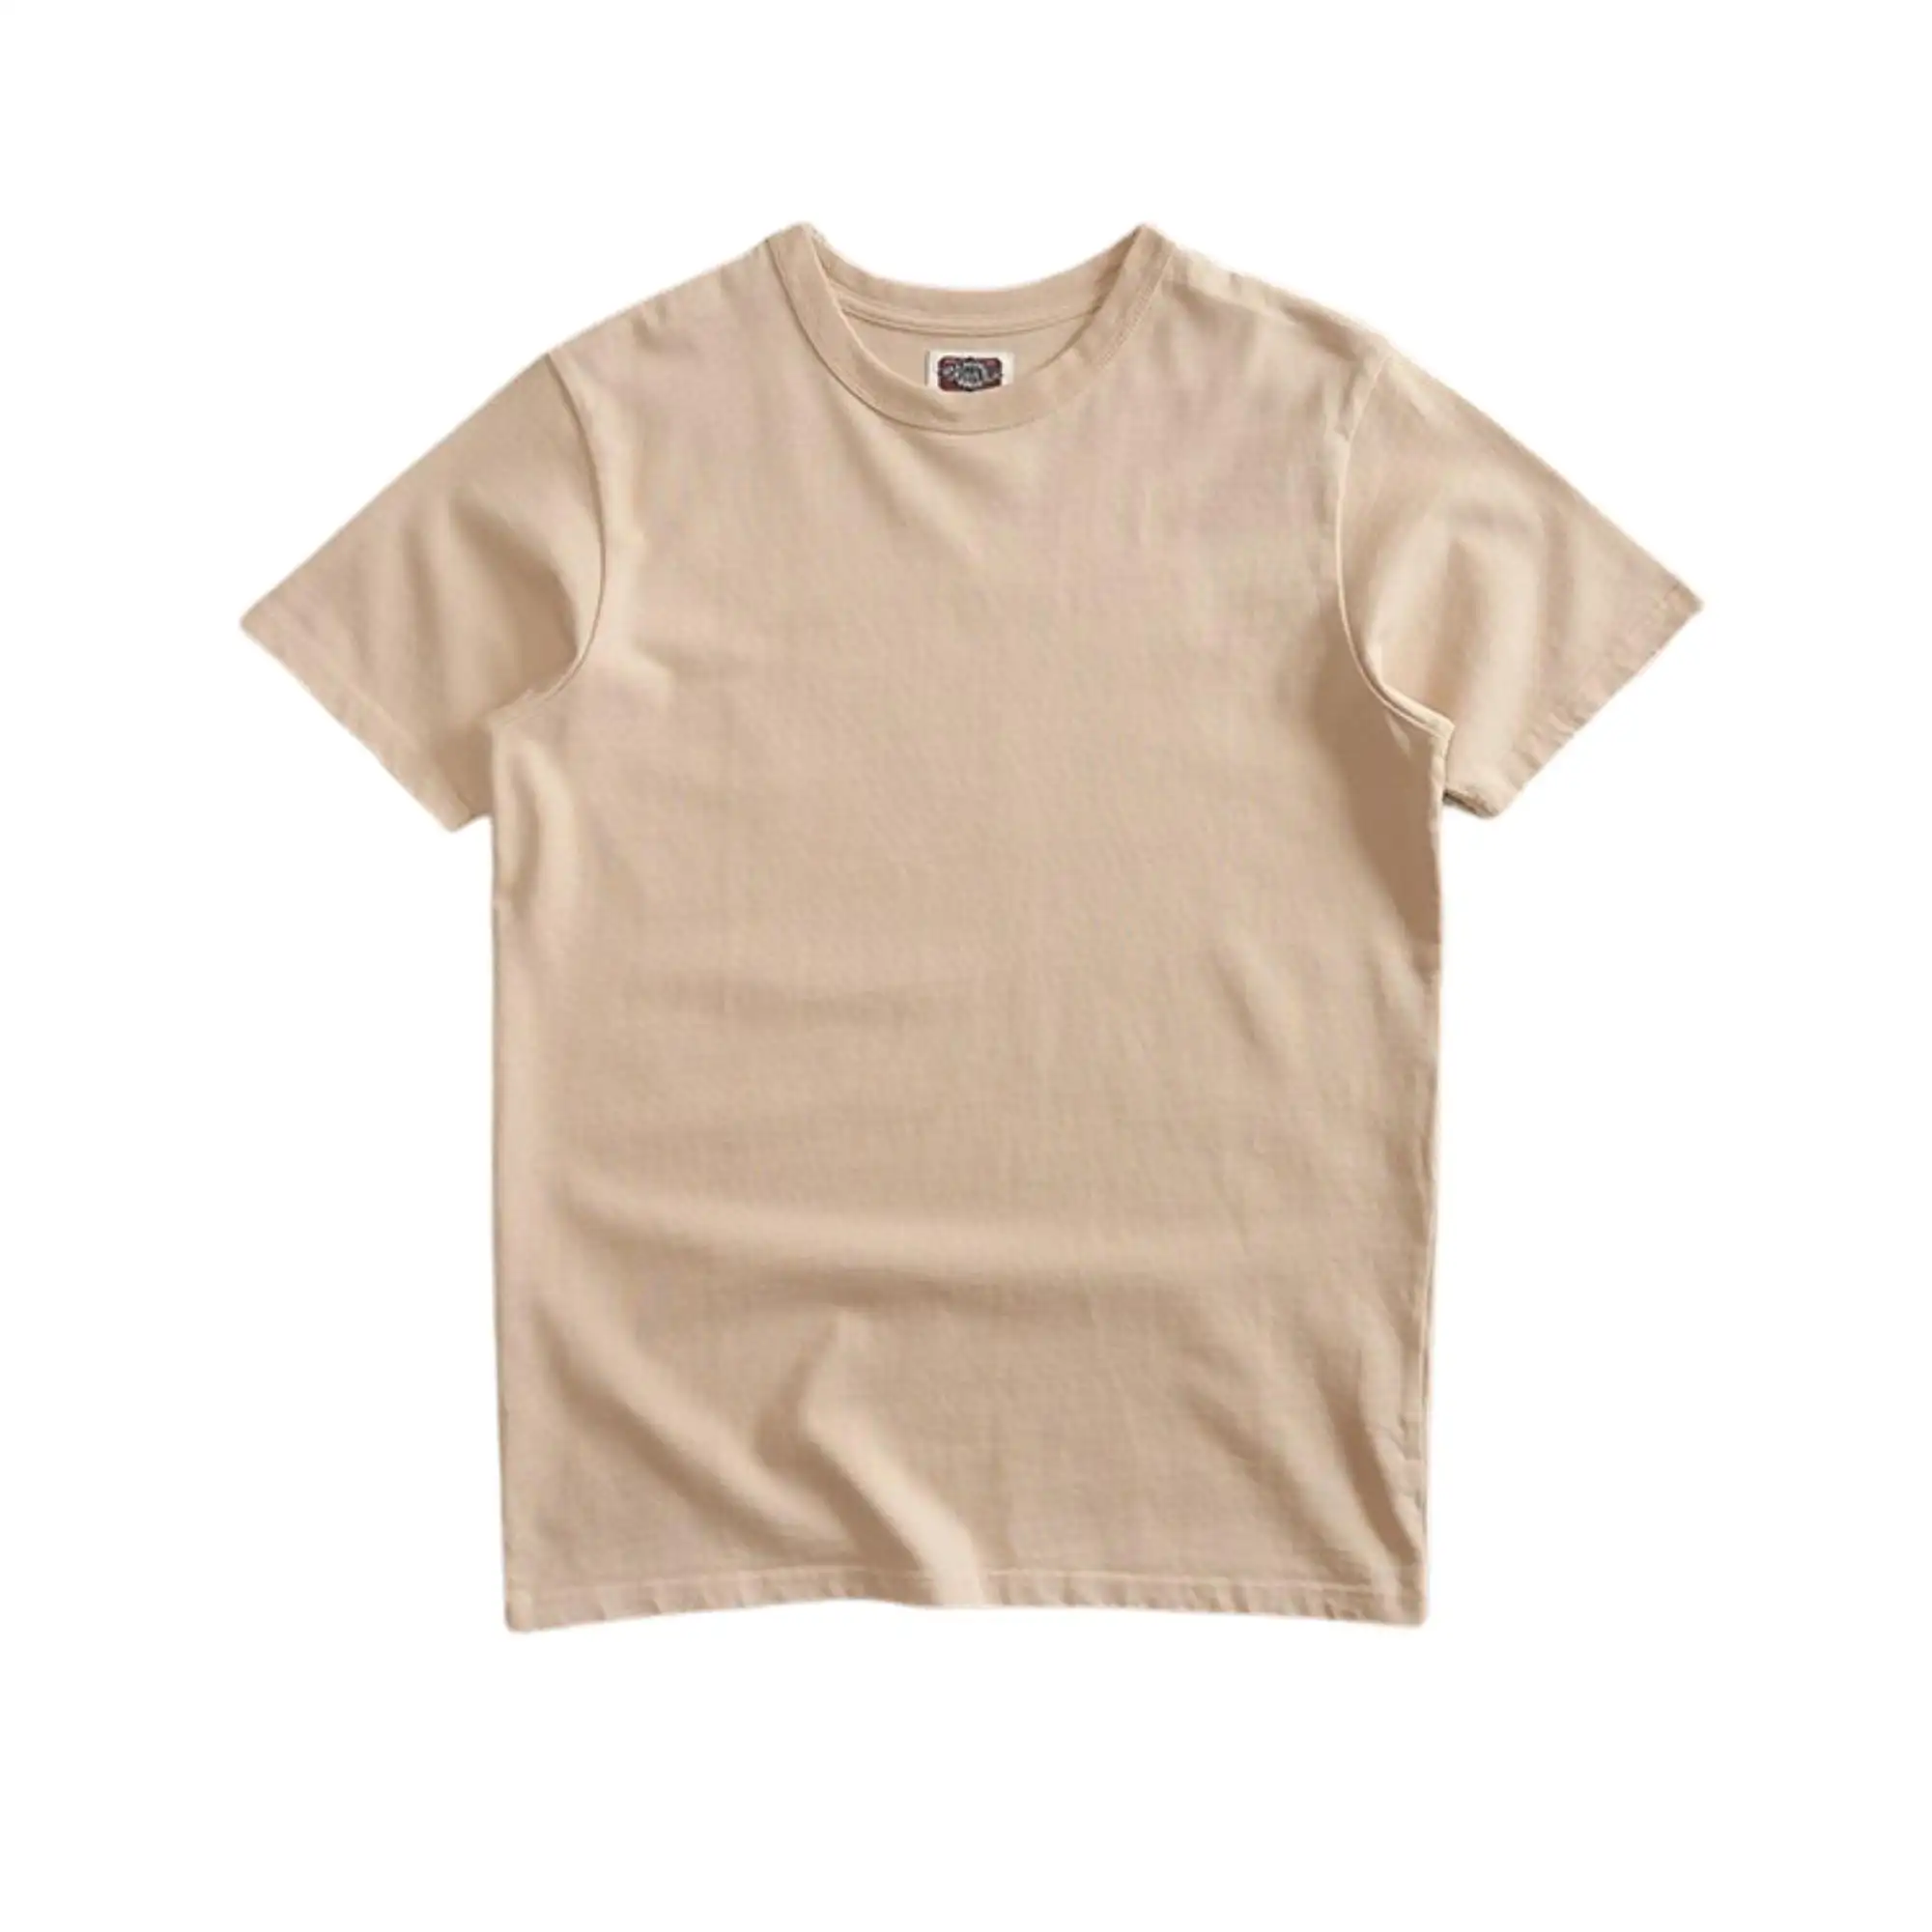 Camiseta de algodón 100% personalizada para hombre, camisa con estampado en blanco, 100% de algodón